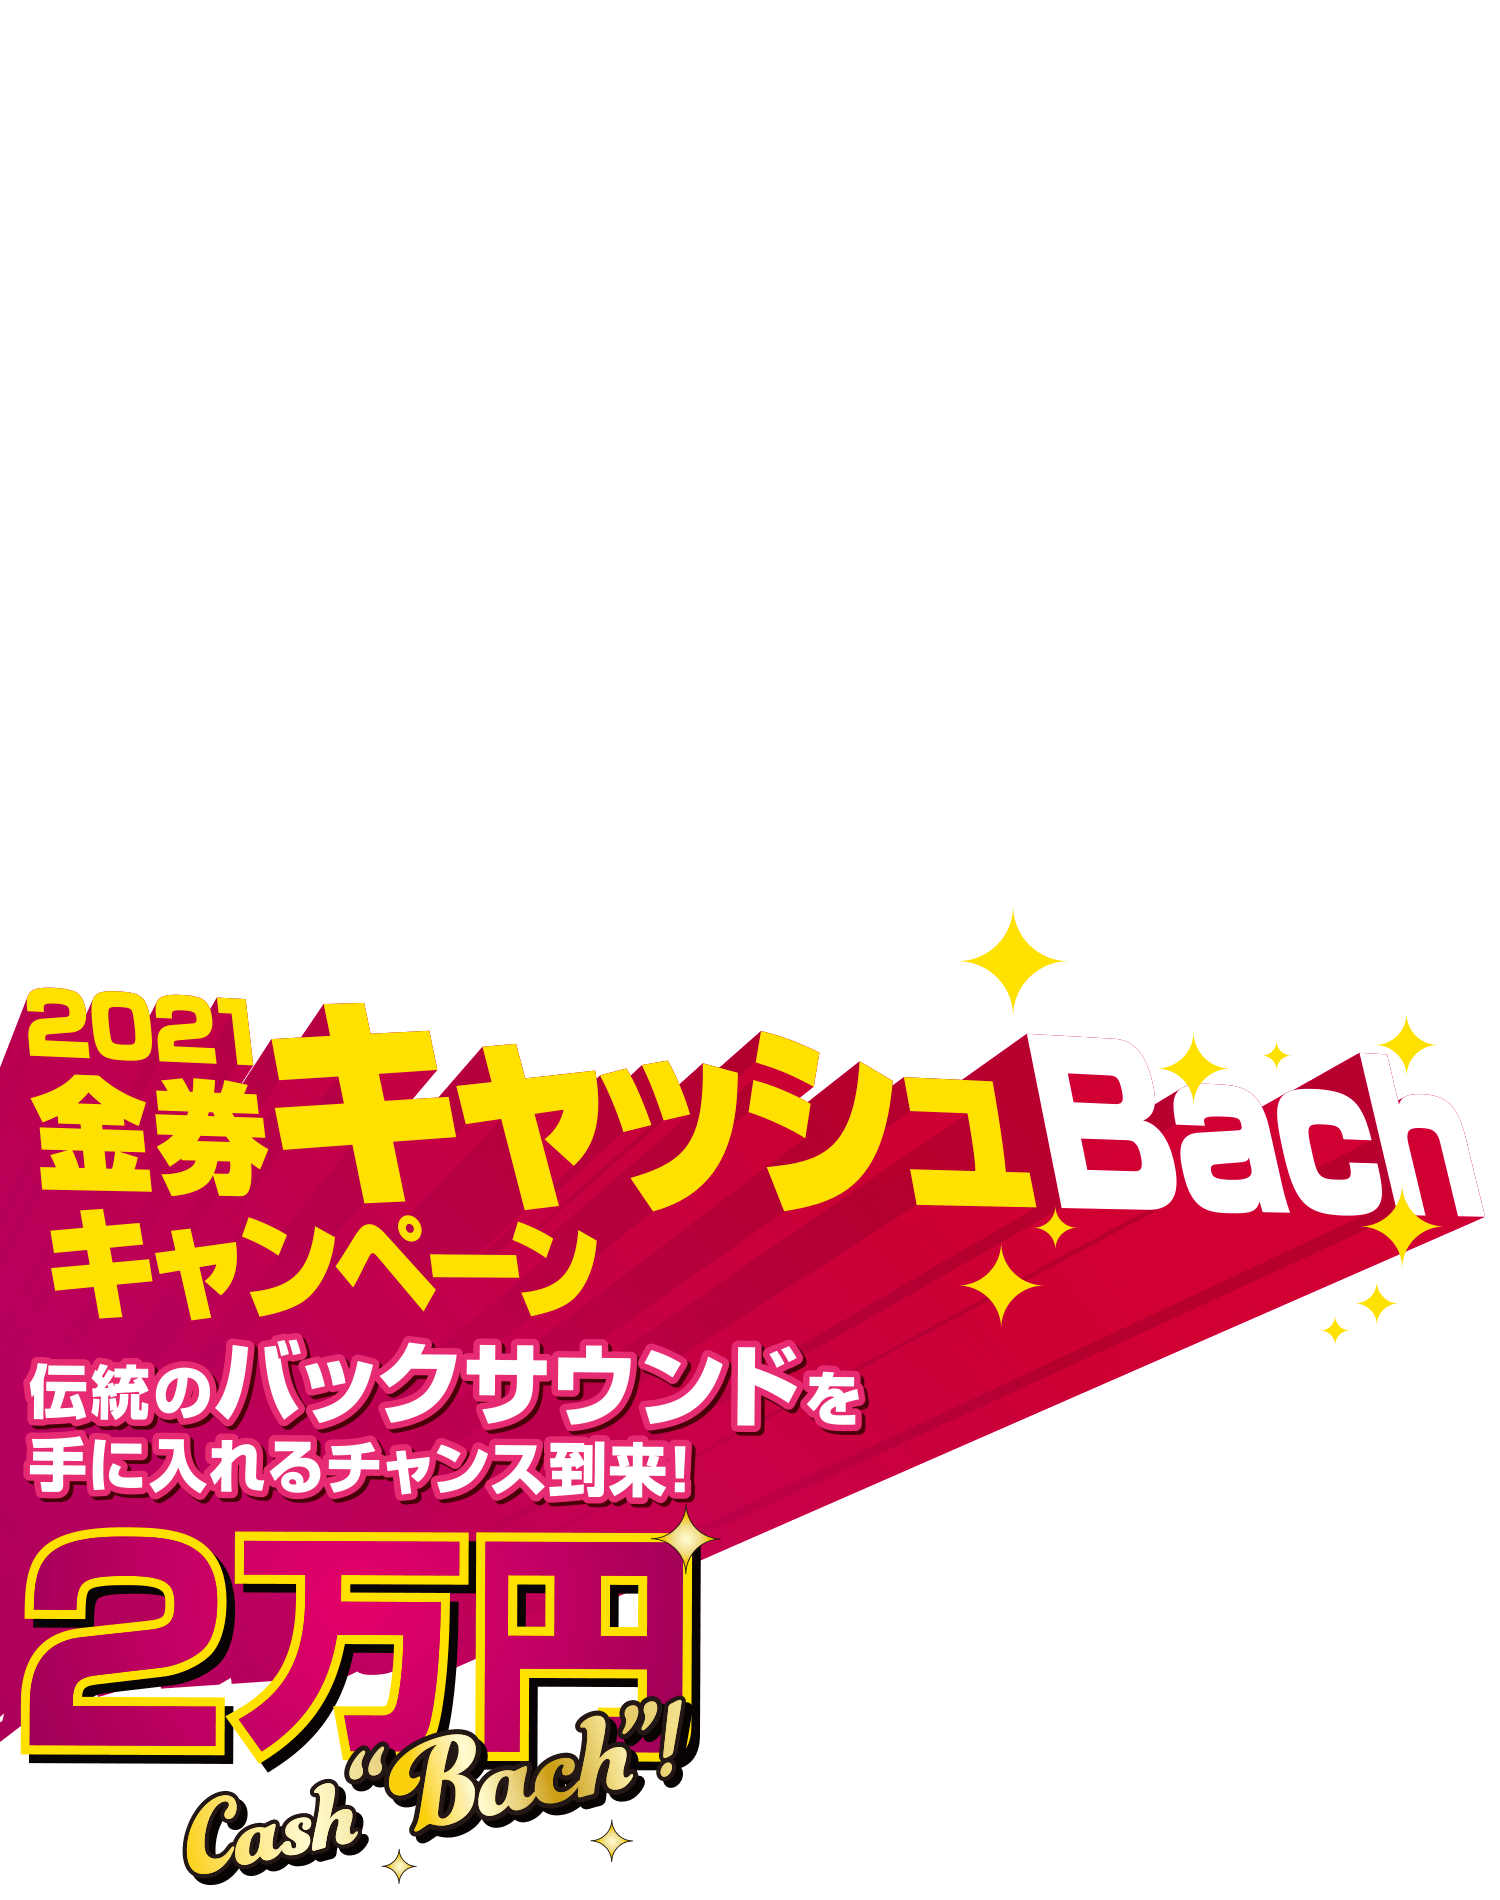 2021金券キャッシュBachキャンペーン